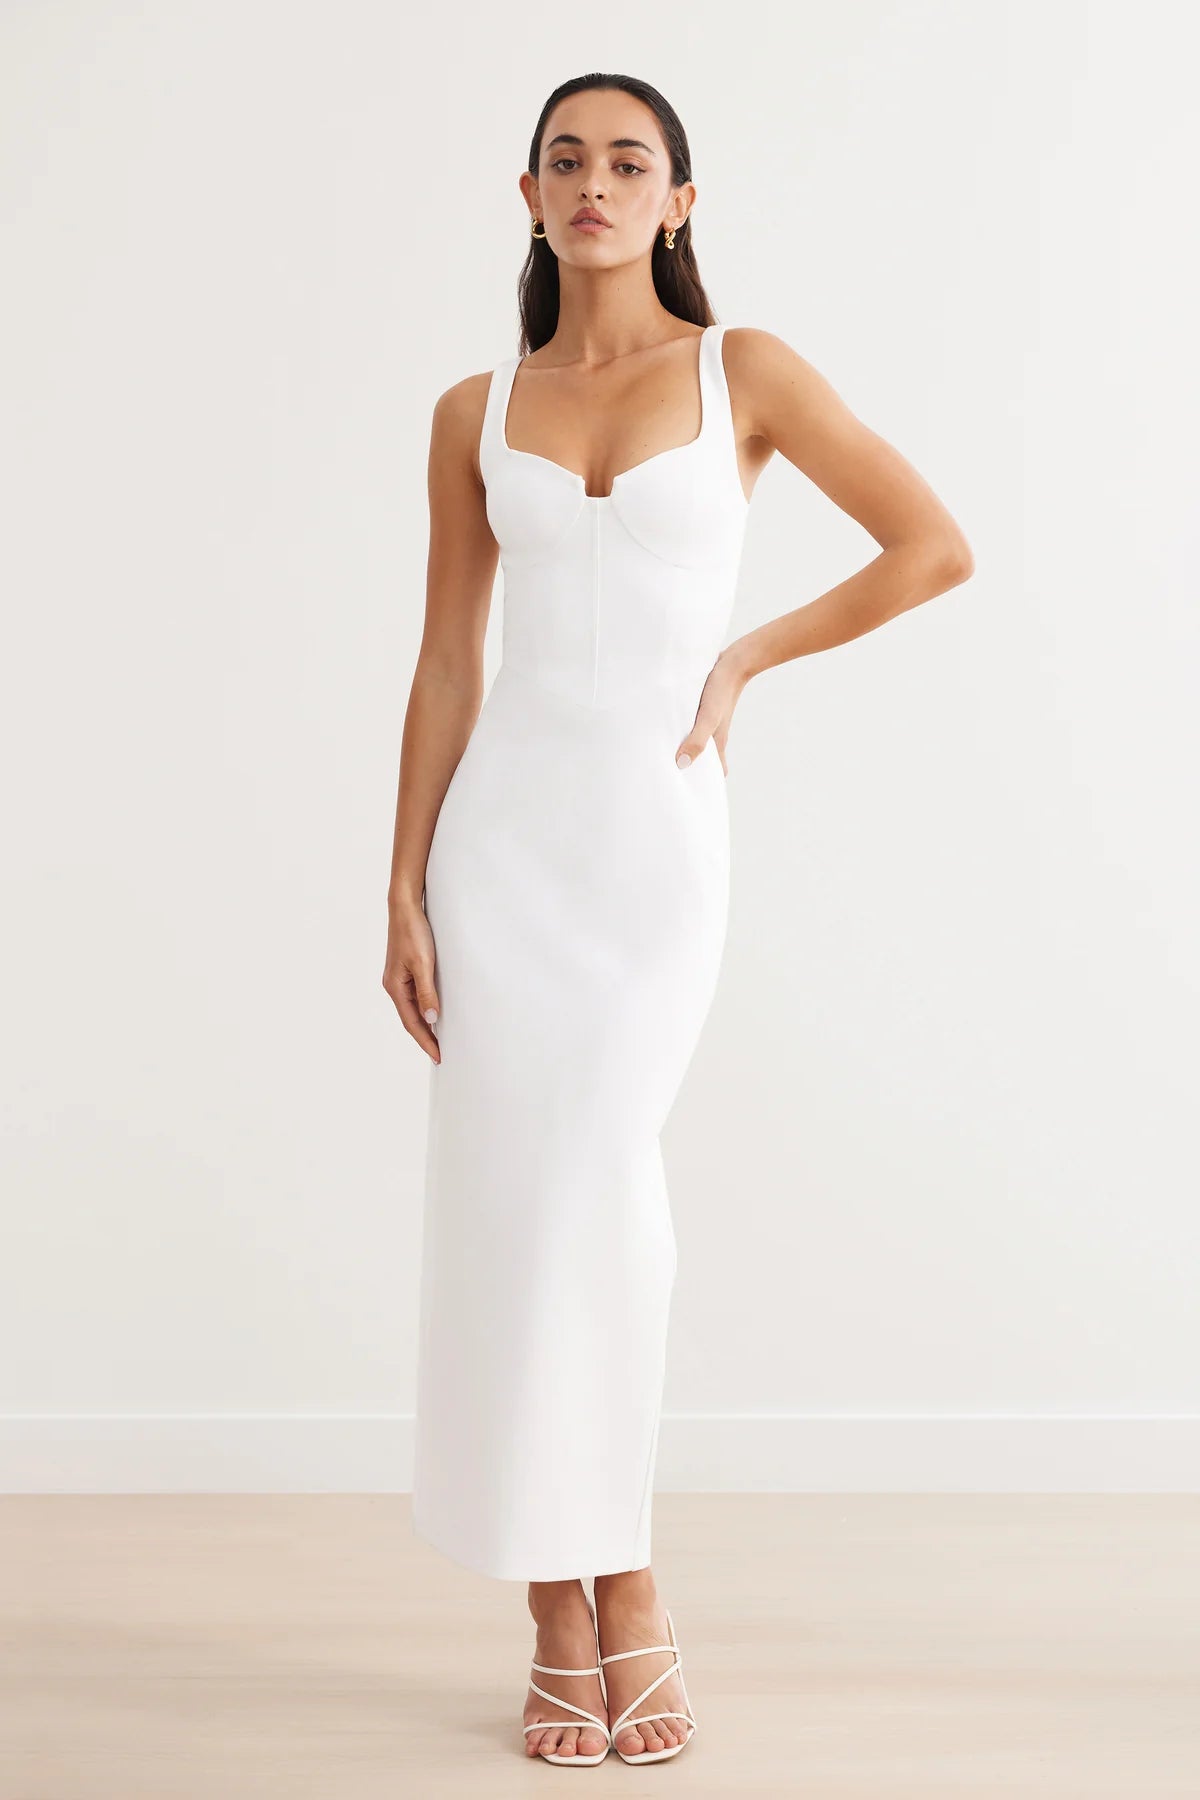 Lexi - Miro Dress - White